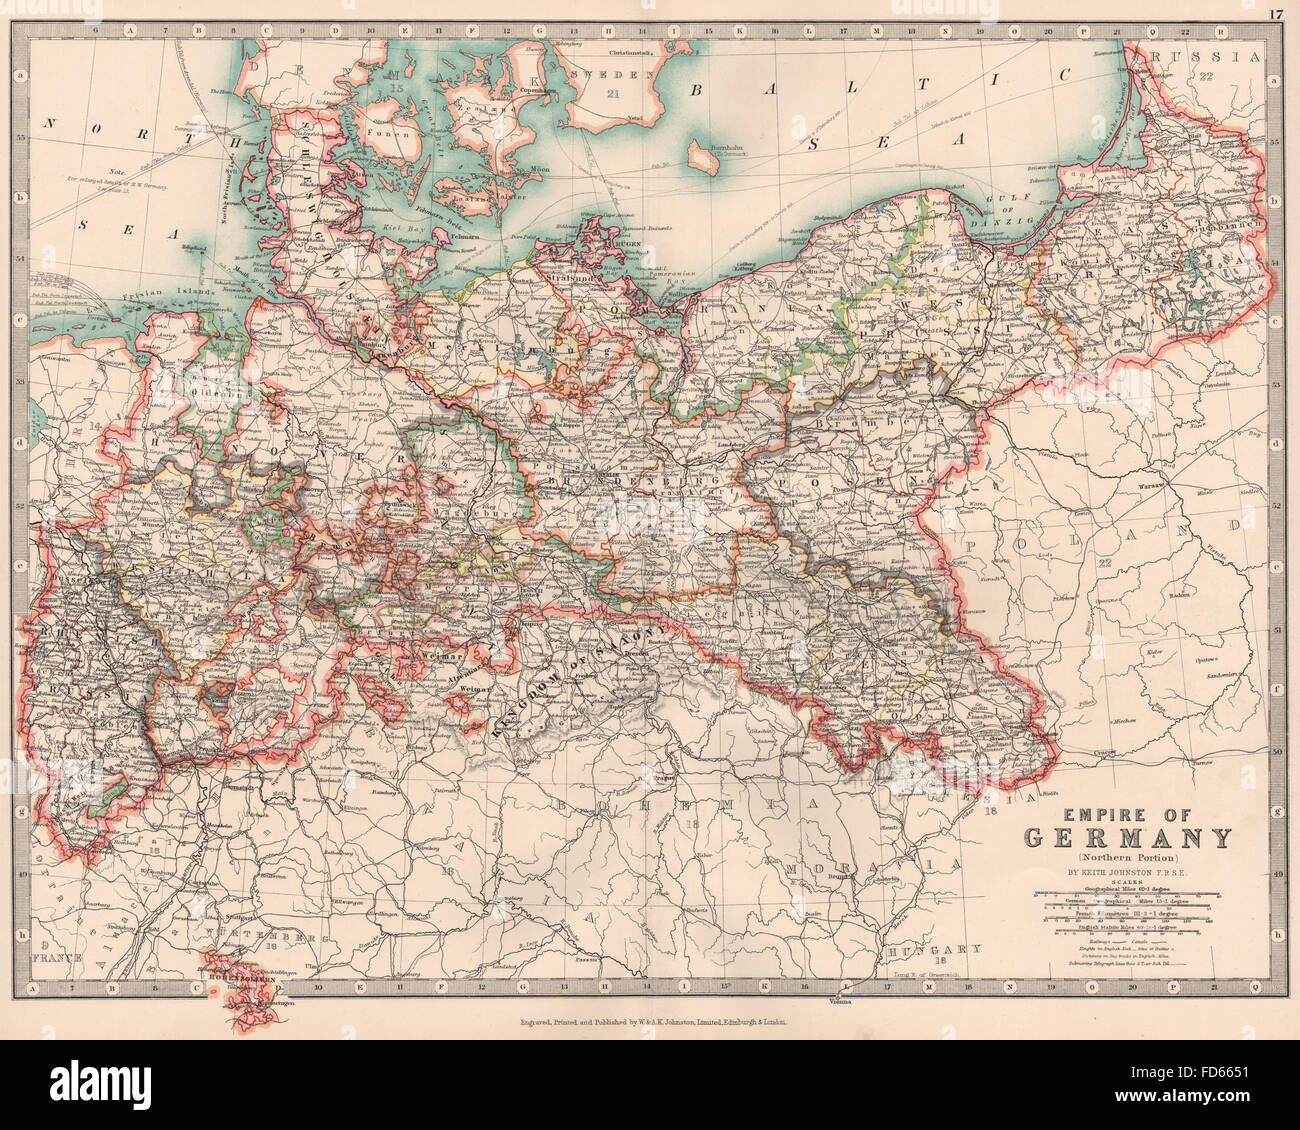 Imperio alemán Norte: Prusia &c. Los ferrocarriles Canales. JOHNSTON, 1906 mapa antiguo Foto de stock